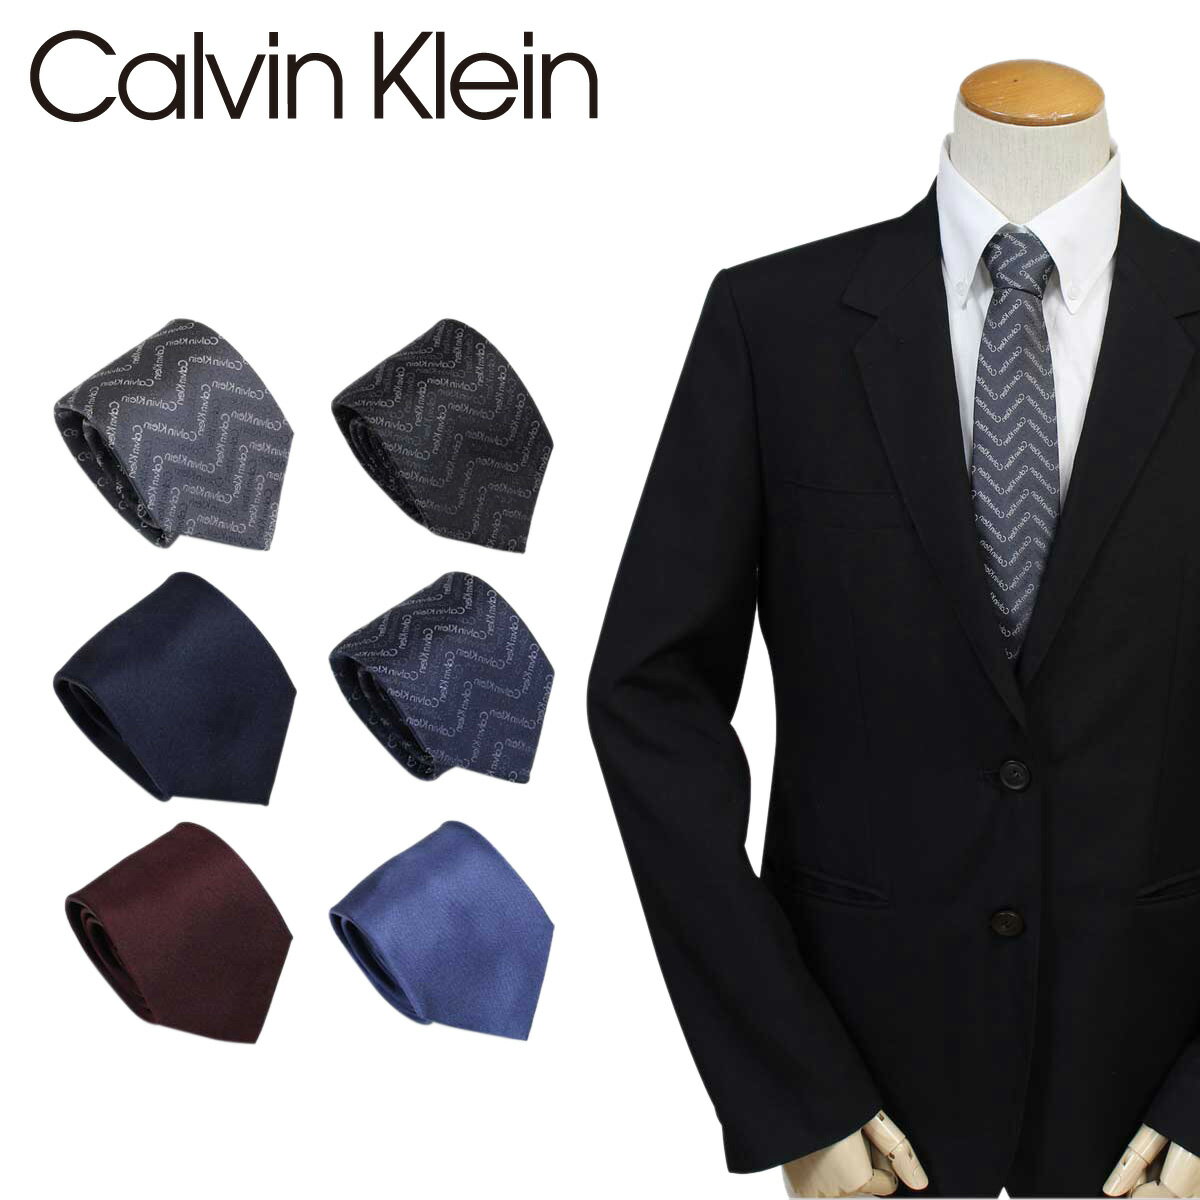 カルバン・クライン ネクタイ Calvin Klein ネクタイ シルク カルバンクライン メンズ CK ビジネス 結婚式 ブランド